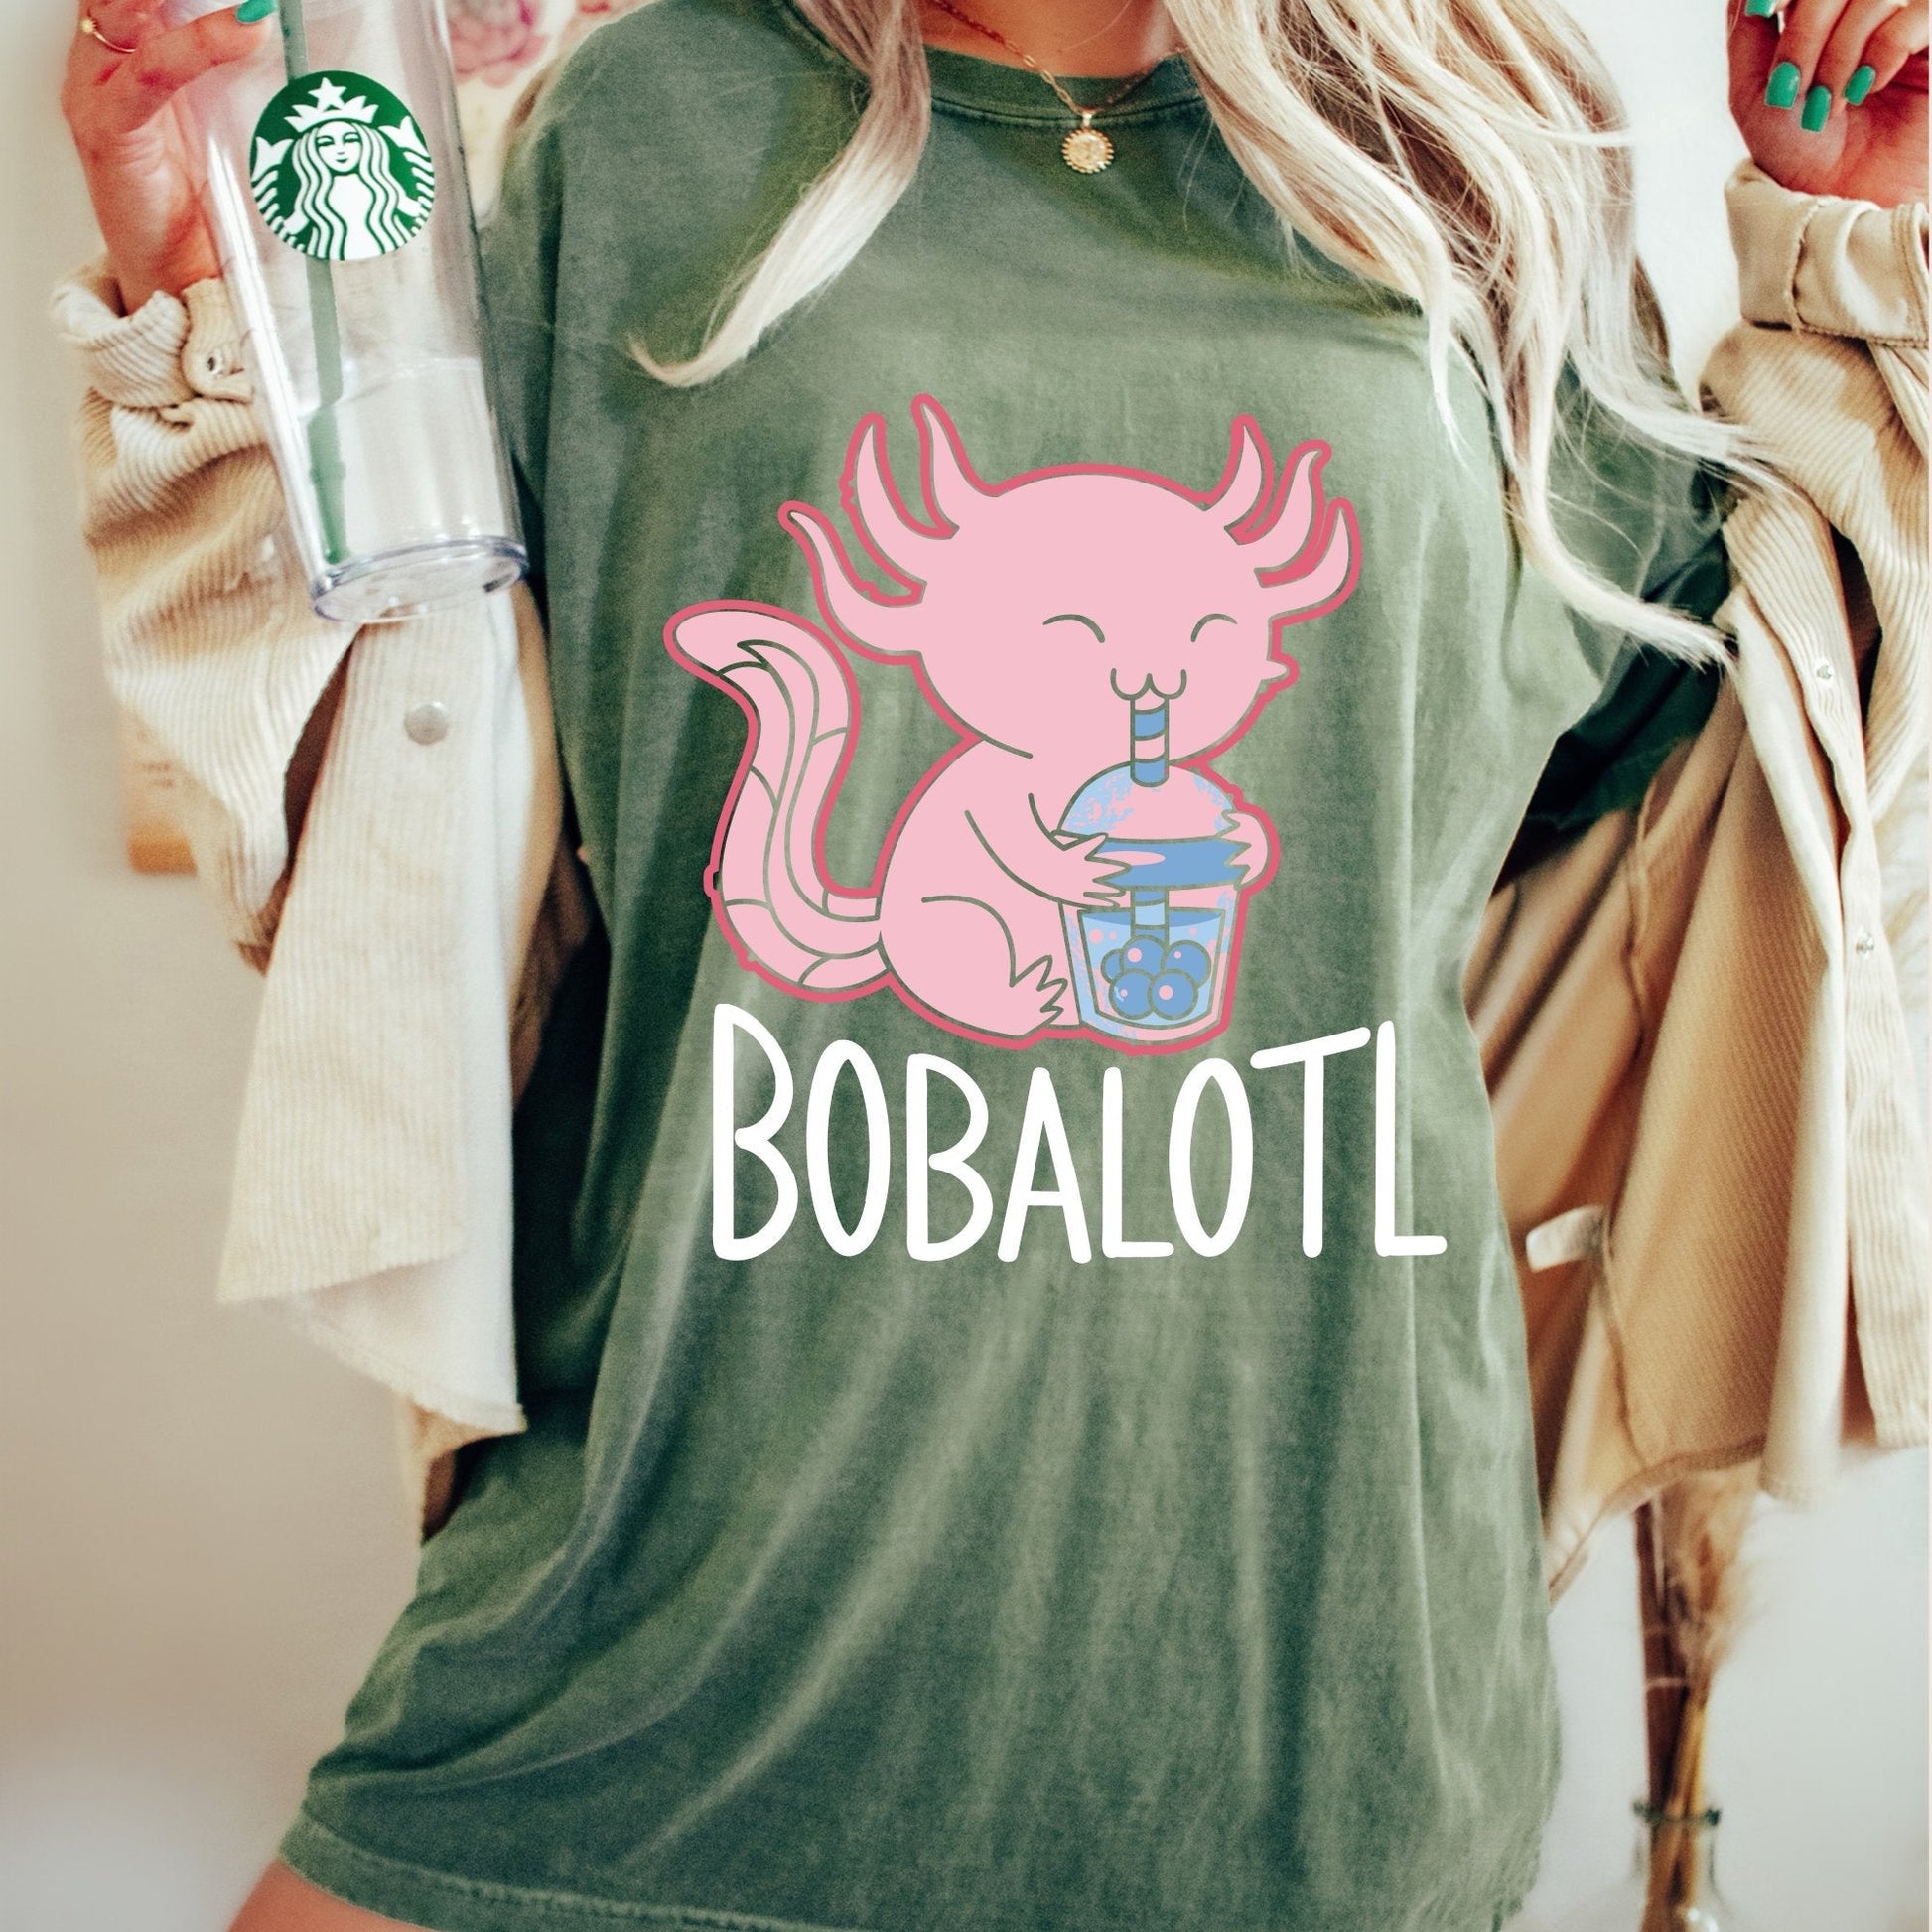 Bobalotl T-Shirt, Bobalotl Shirt, Bobalotl Gift, Dinosaur Lovers, Dinosaur Gifts, Funny Saying Shirts, Mexican Bobalotl T-Shirt - AFADesignsCo